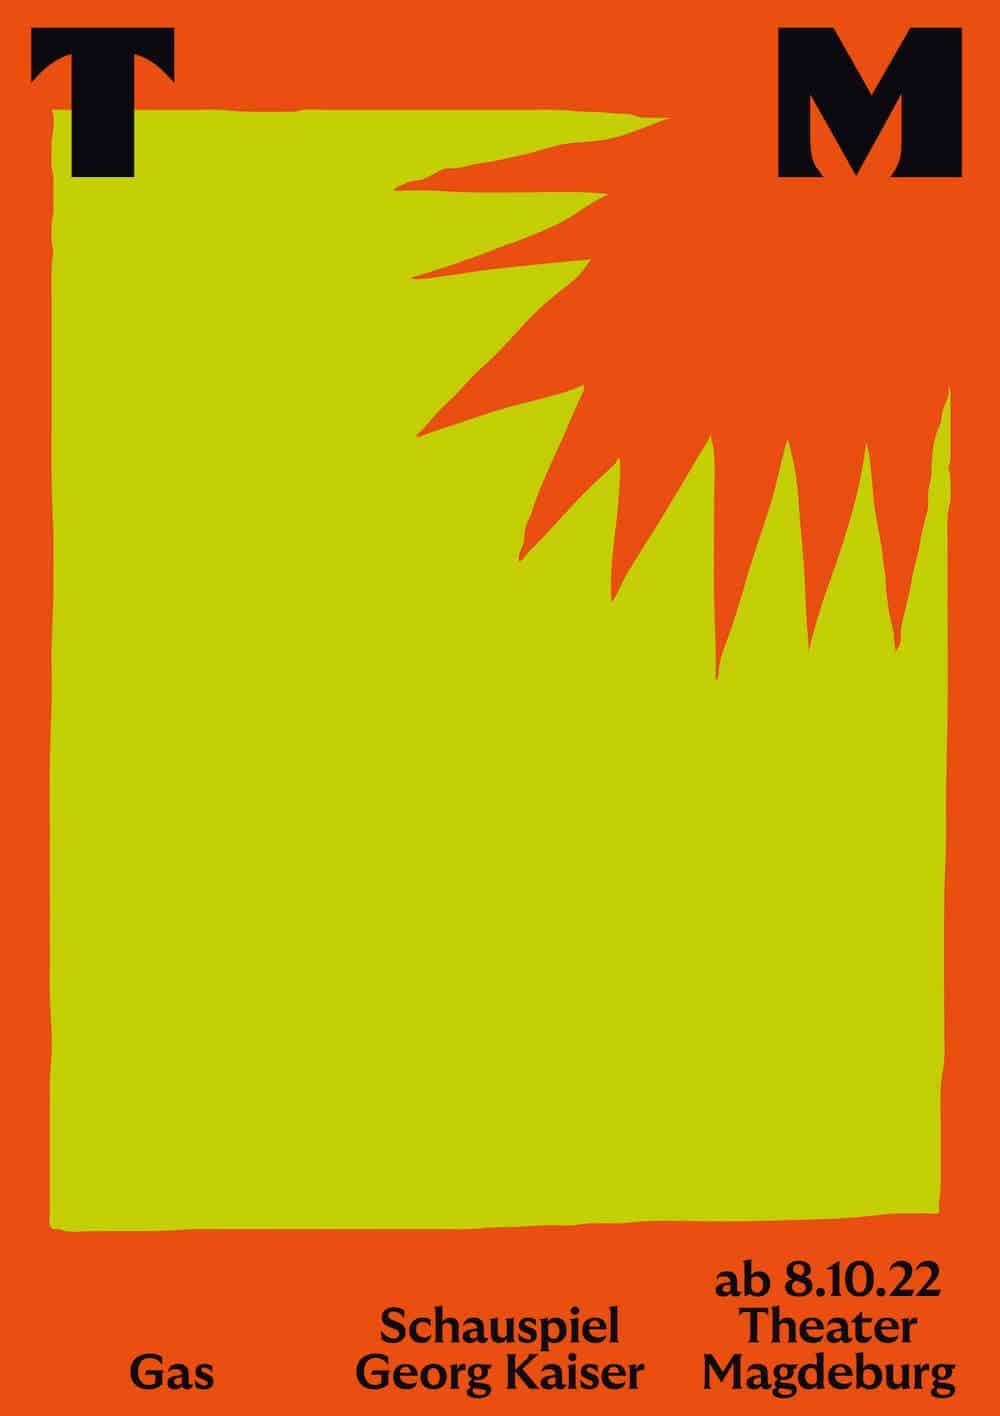 Plakat für das Theater Magdeburg von Neue Gestaltung: Orangene Explosion in gelbem Raum für das Stück "Gas"